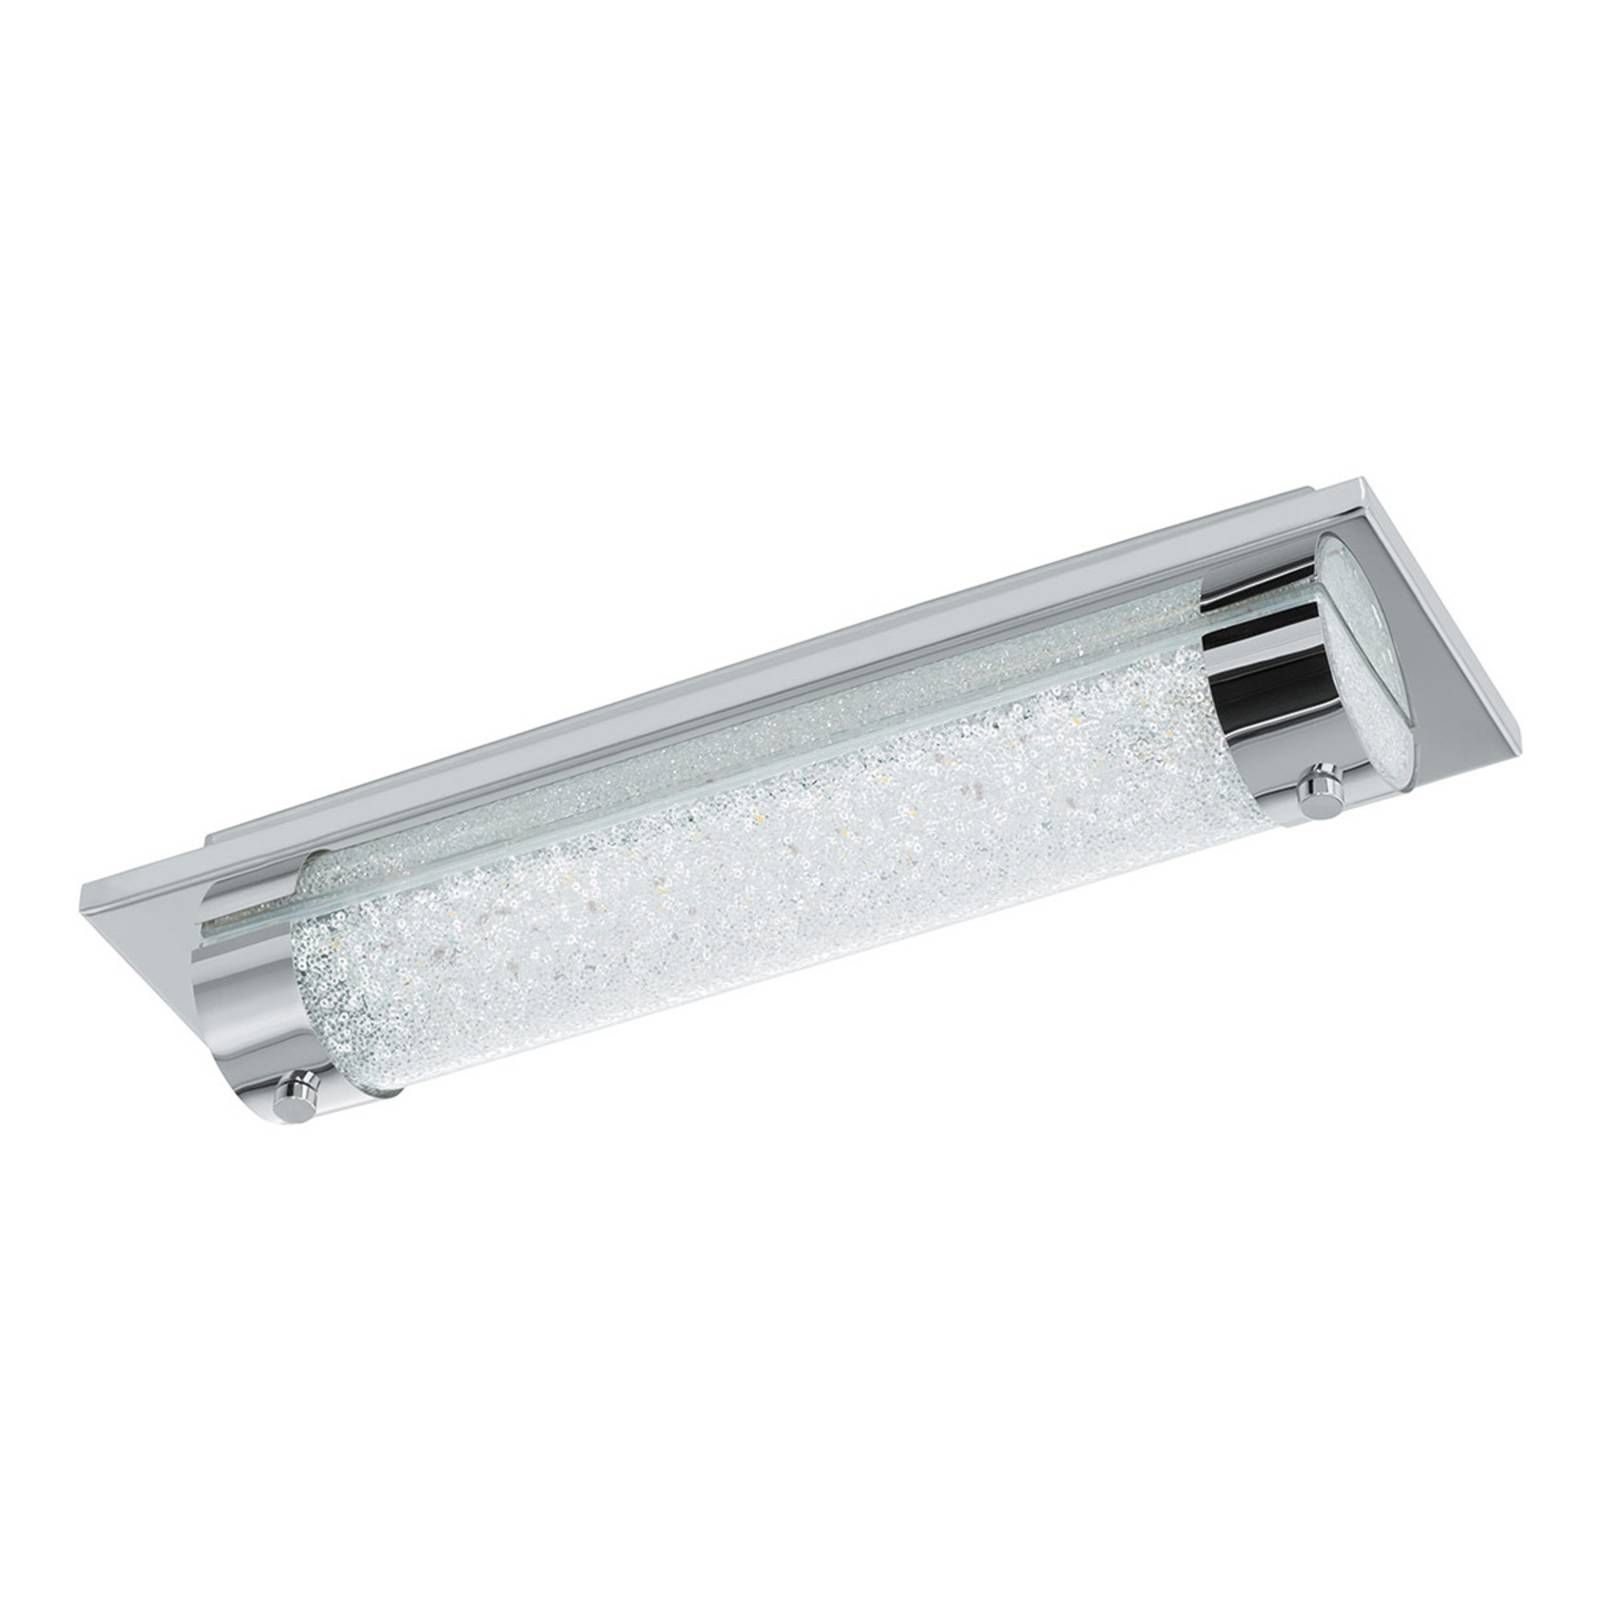 EGLO Stropné LED svetlo Tolorico, 35 cm dlhé, Kúpeľňa, ušľachtilá oceľ, sklo, 8W, P: 35 cm, L: 10 cm, K: 7cm